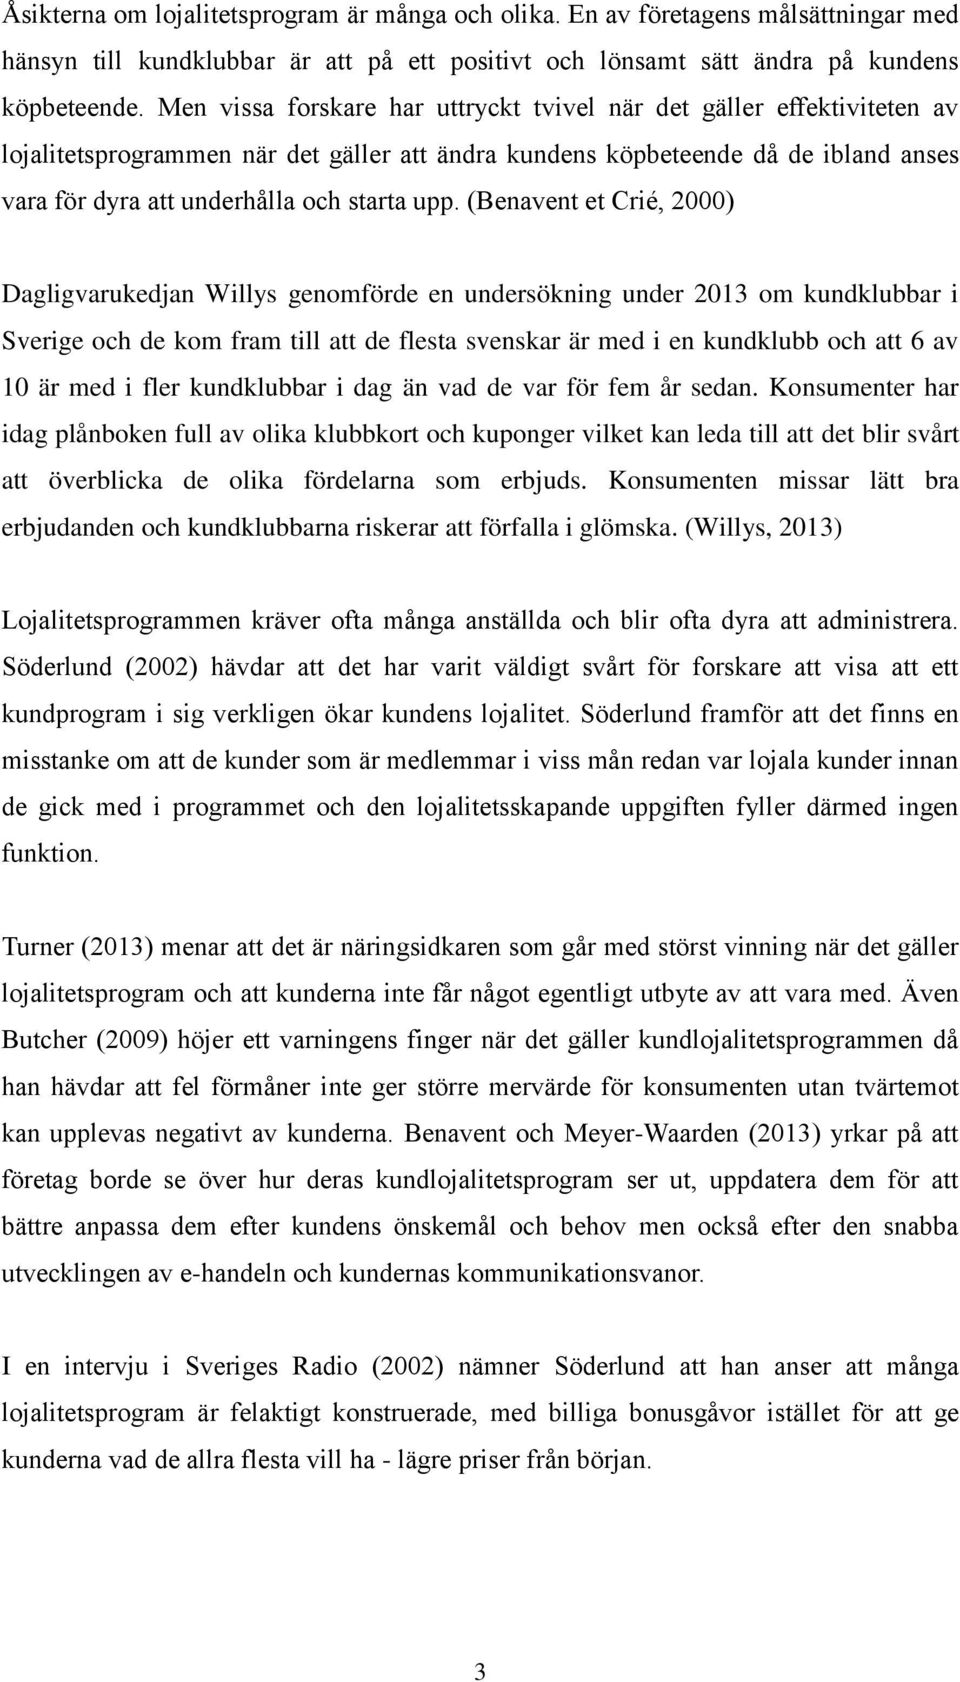 upp. (Benavent et Crié, 2000) Dagligvarukedjan Willys genomförde en undersökning under 2013 om kundklubbar i Sverige och de kom fram till att de flesta svenskar är med i en kundklubb och att 6 av 10